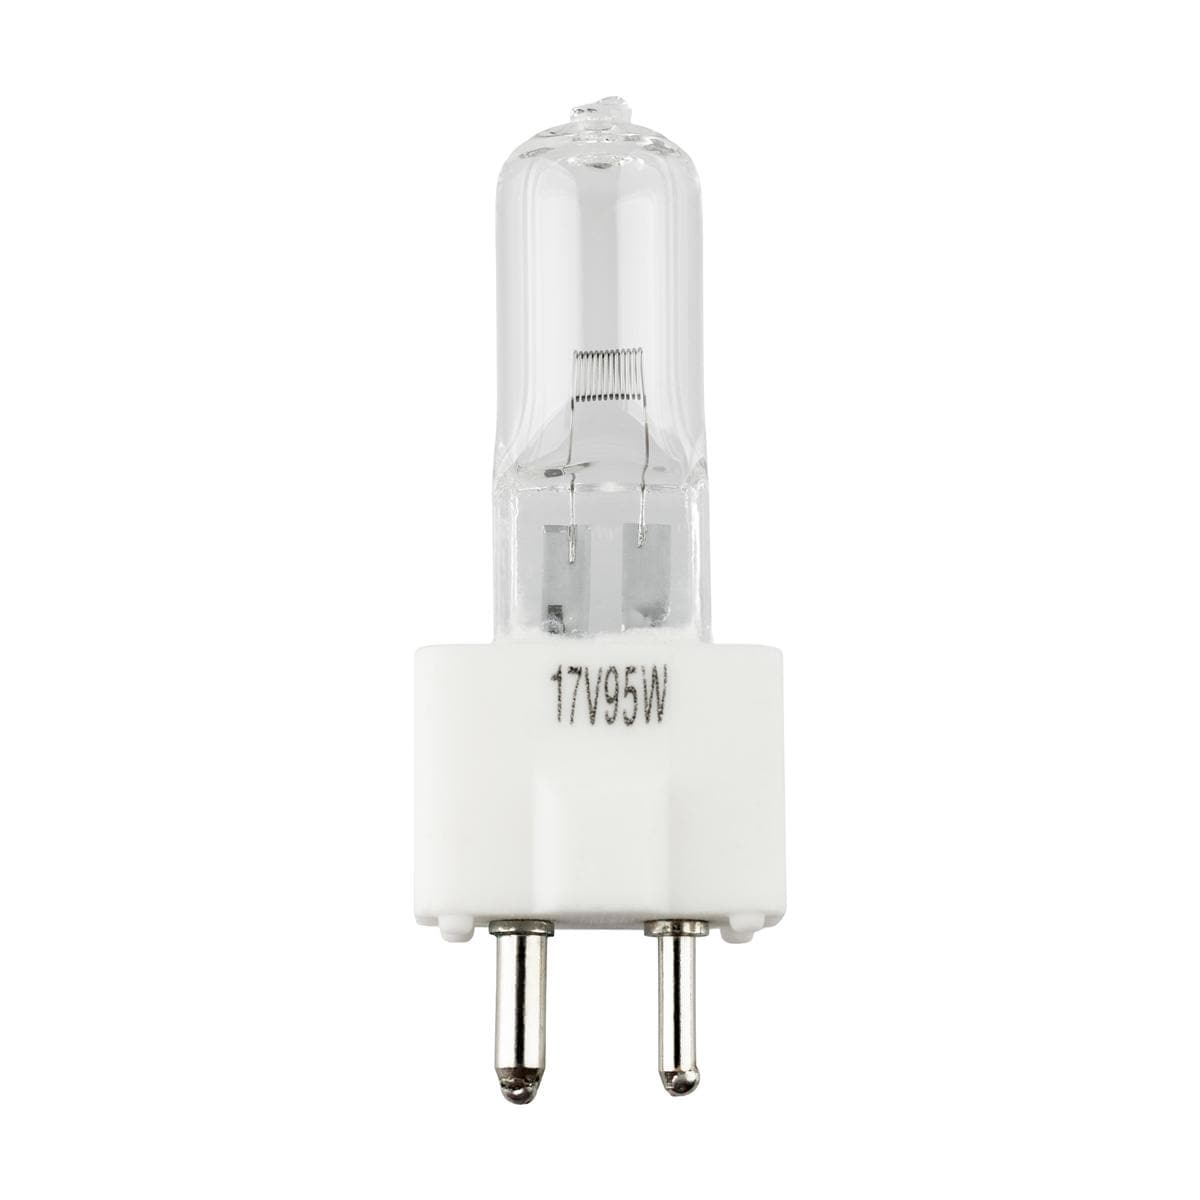 Operating Light Bulb 17V 95W